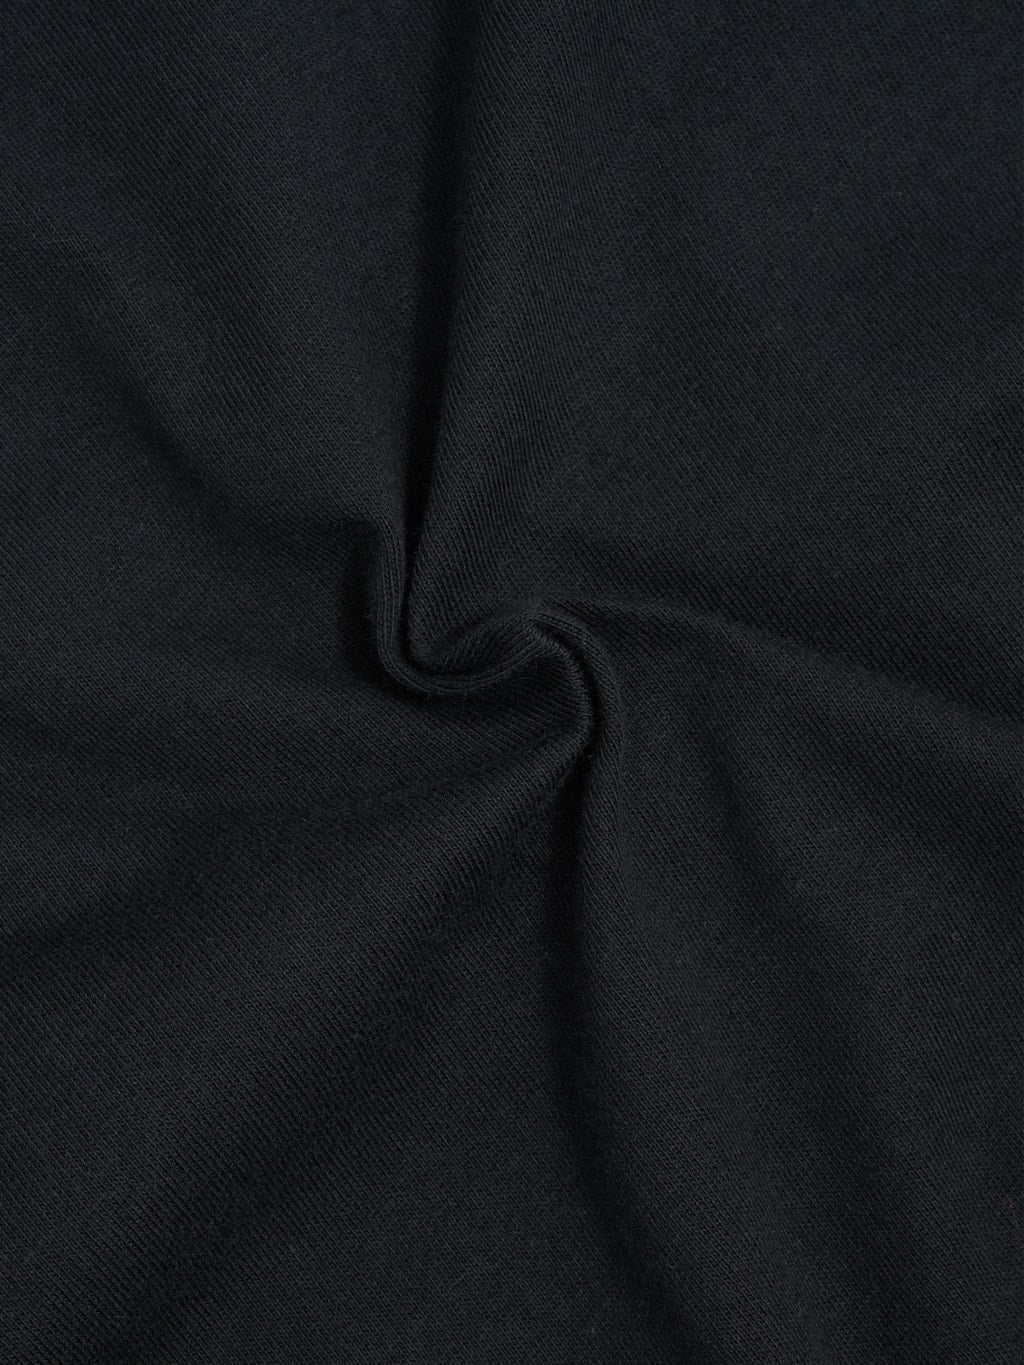 Whitesville Tubular T-Shirt Black (2 Pack)